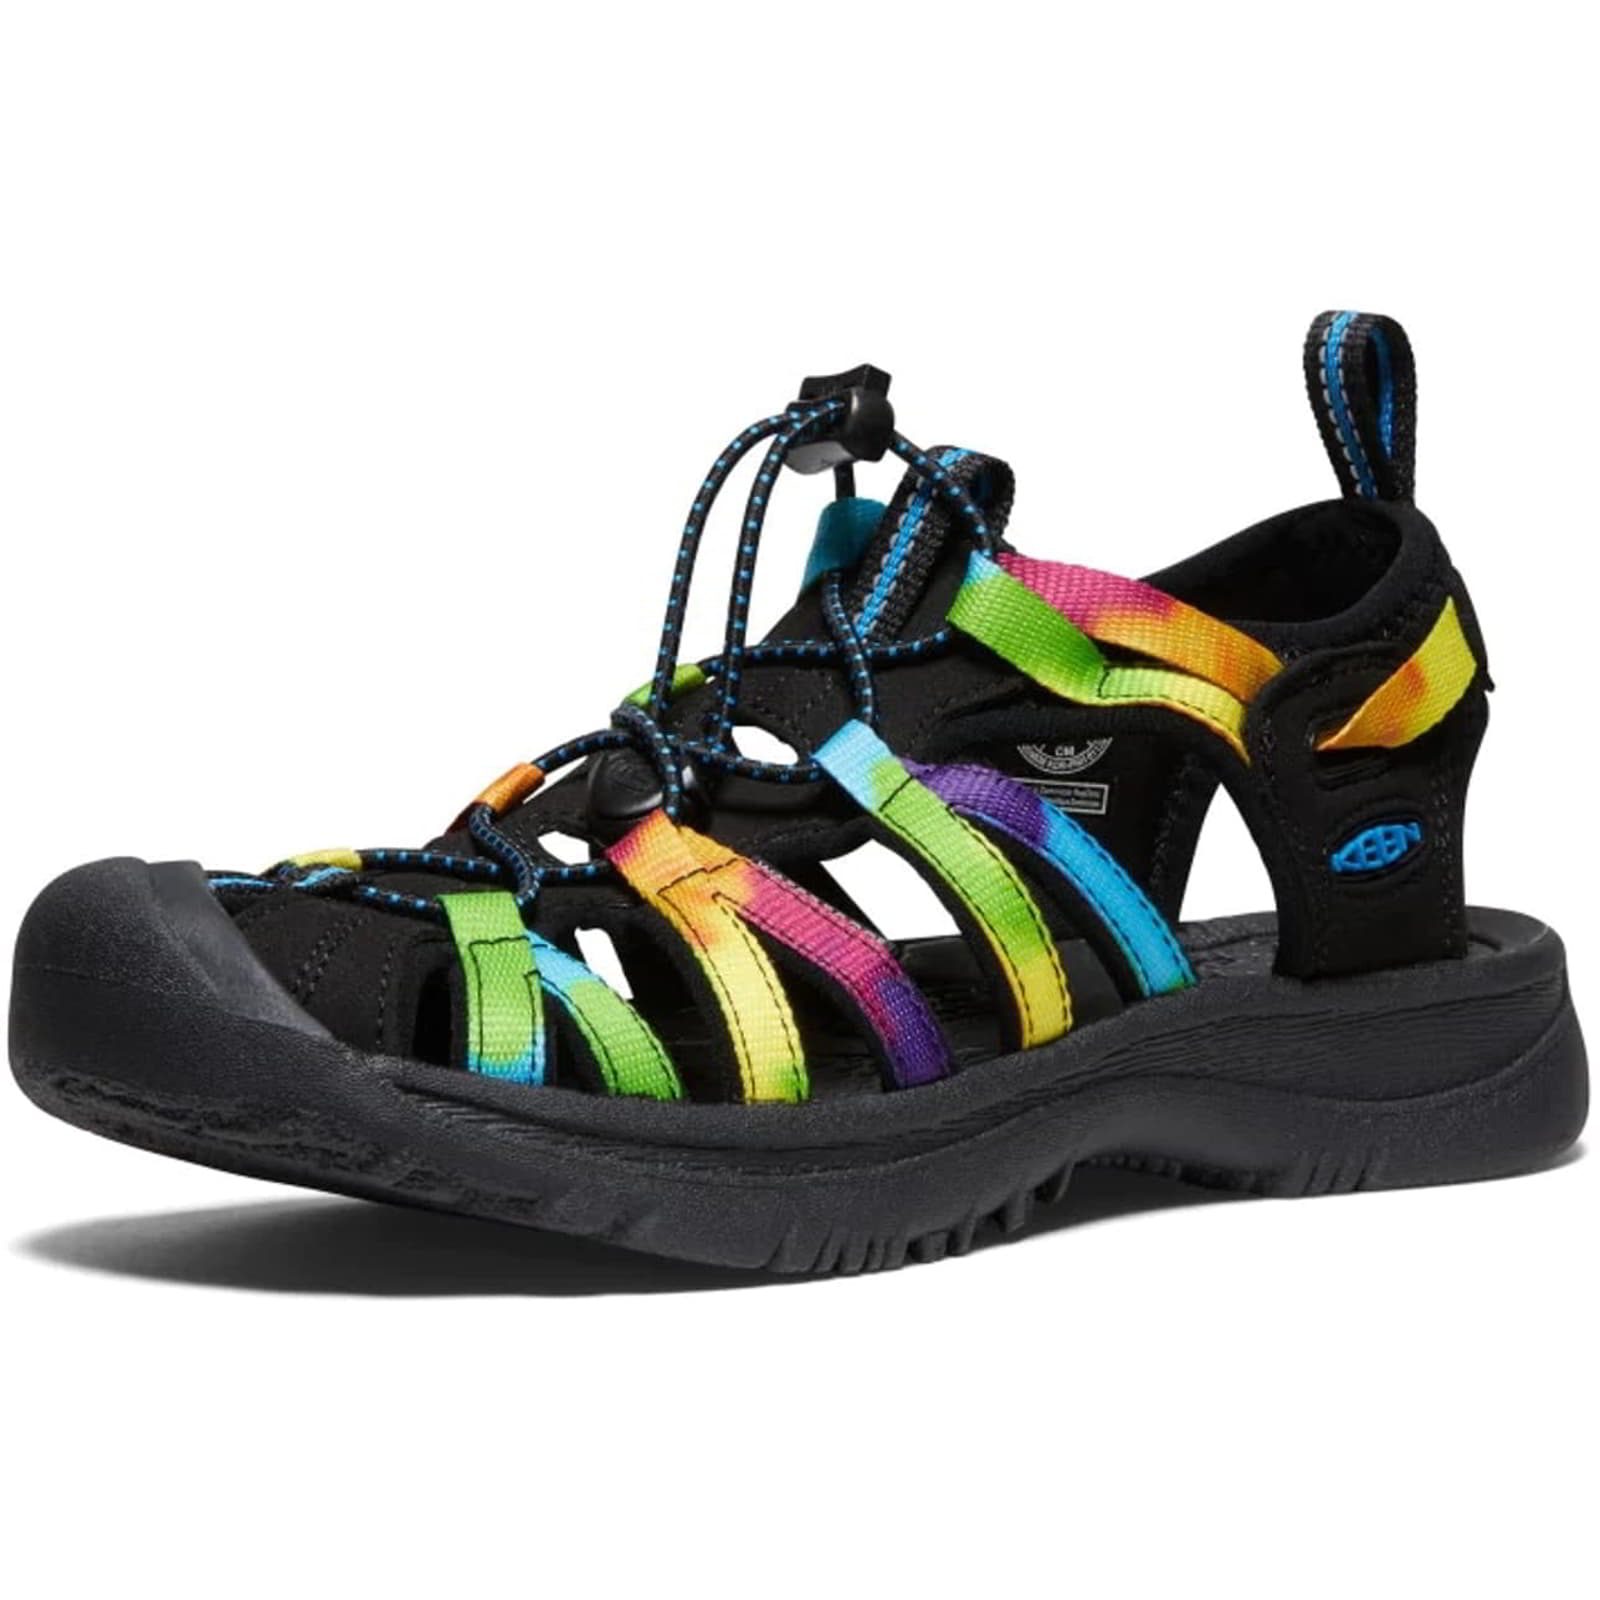 Keen Whisper Women's Waterproof Walking Hiking Sandals - UK 6 / 39 / US 8.5